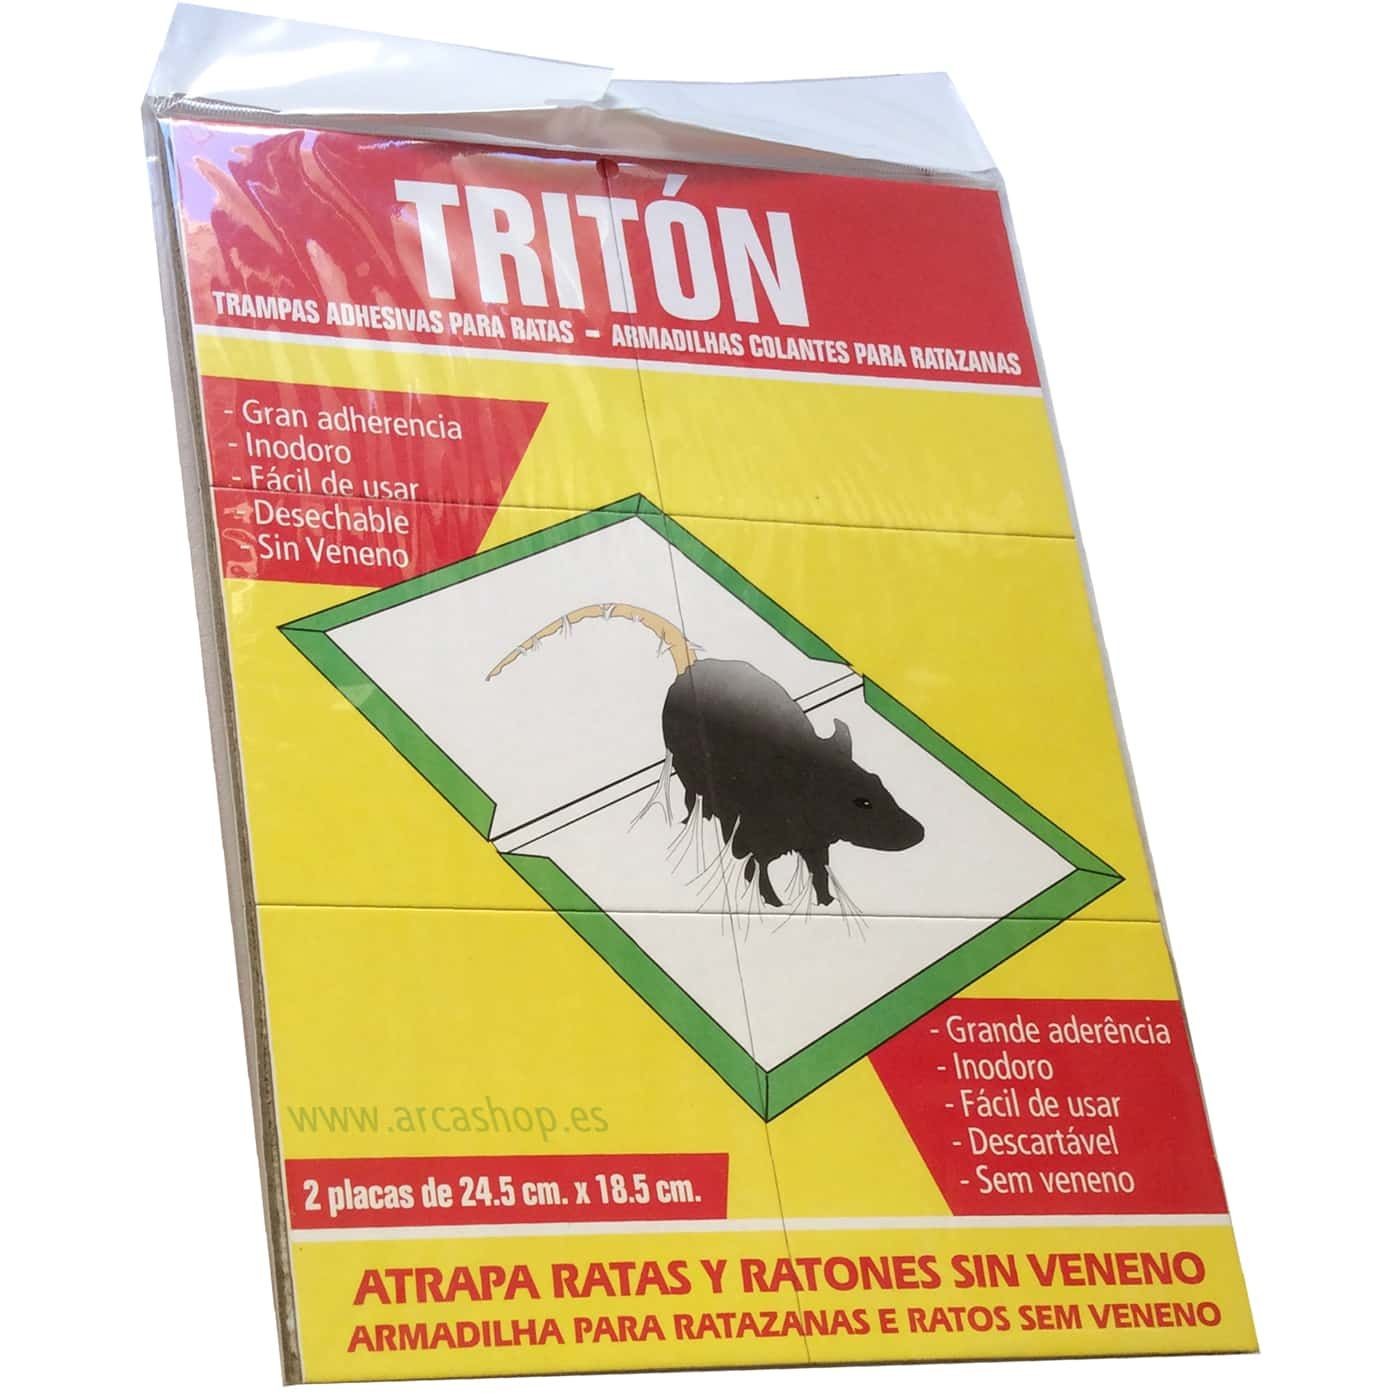 https://arcashop.es/7262/triton-trampas-adhesivas-ratas-ratones-dos-placas-de-245-cm-por-185-cm-especial-para-ratas.jpg